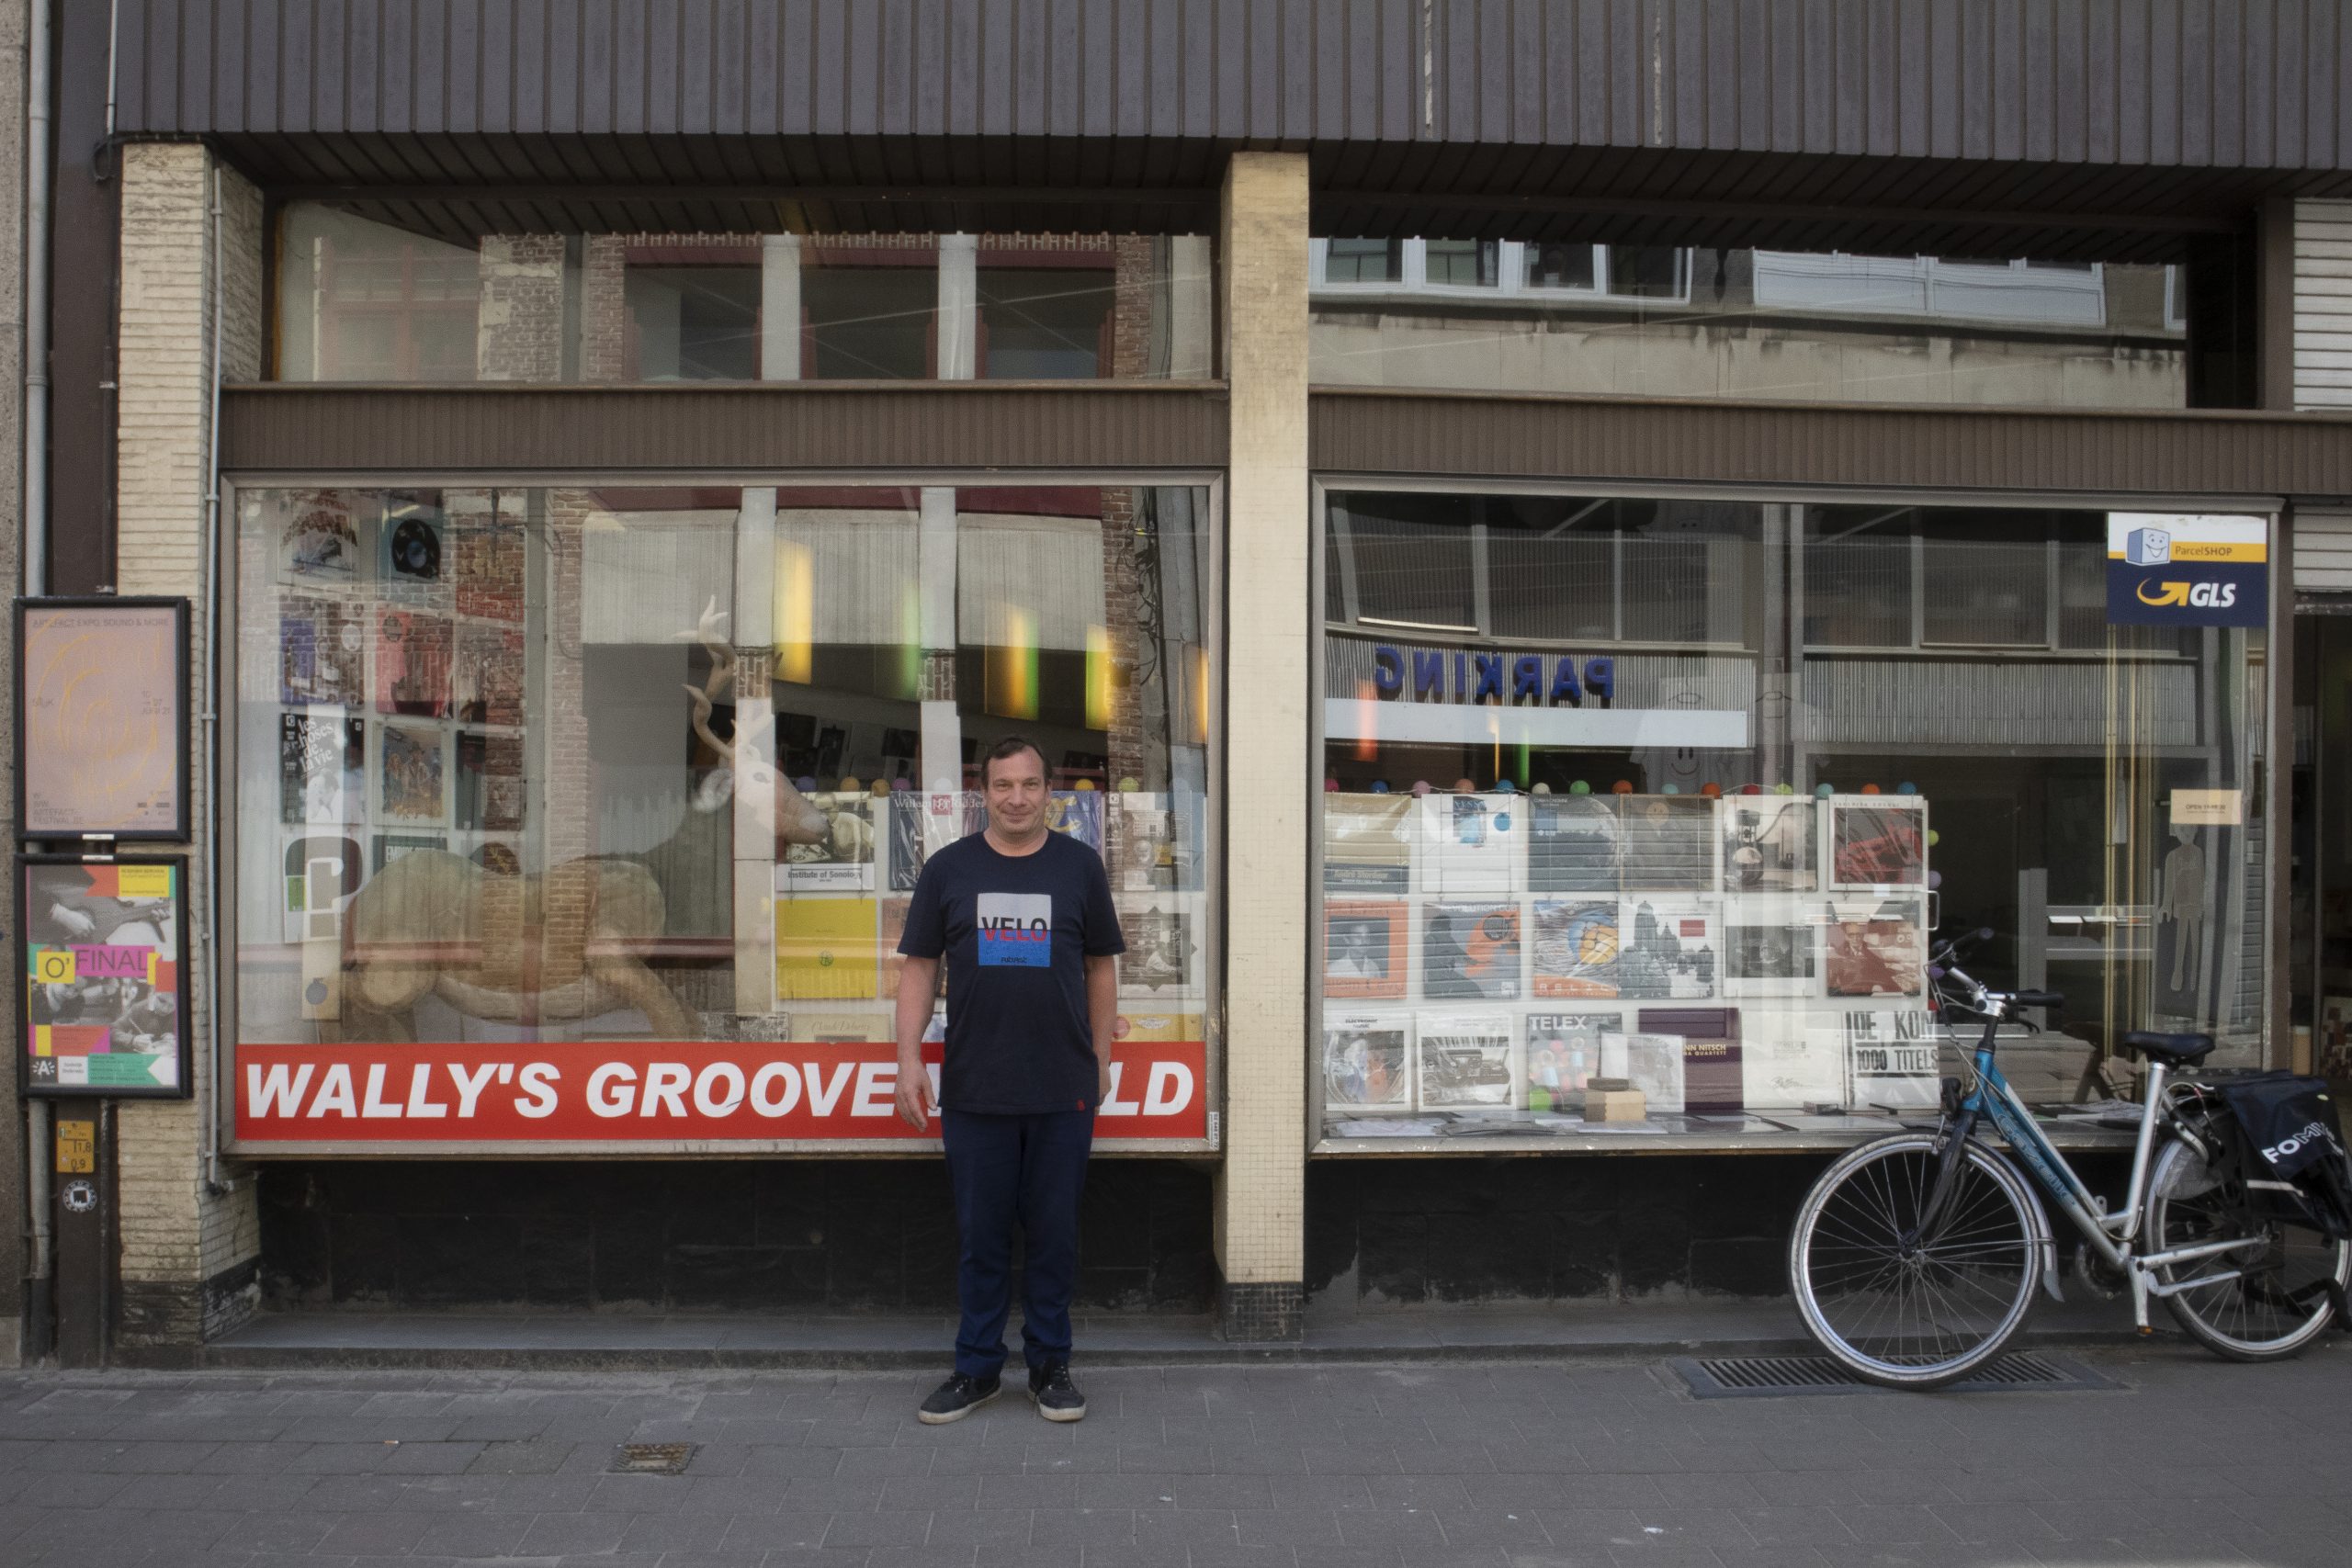 Koop lokaal, deel 2: Vinylplaten kopen? Wandel eens binnen bij Wally’s Groove World